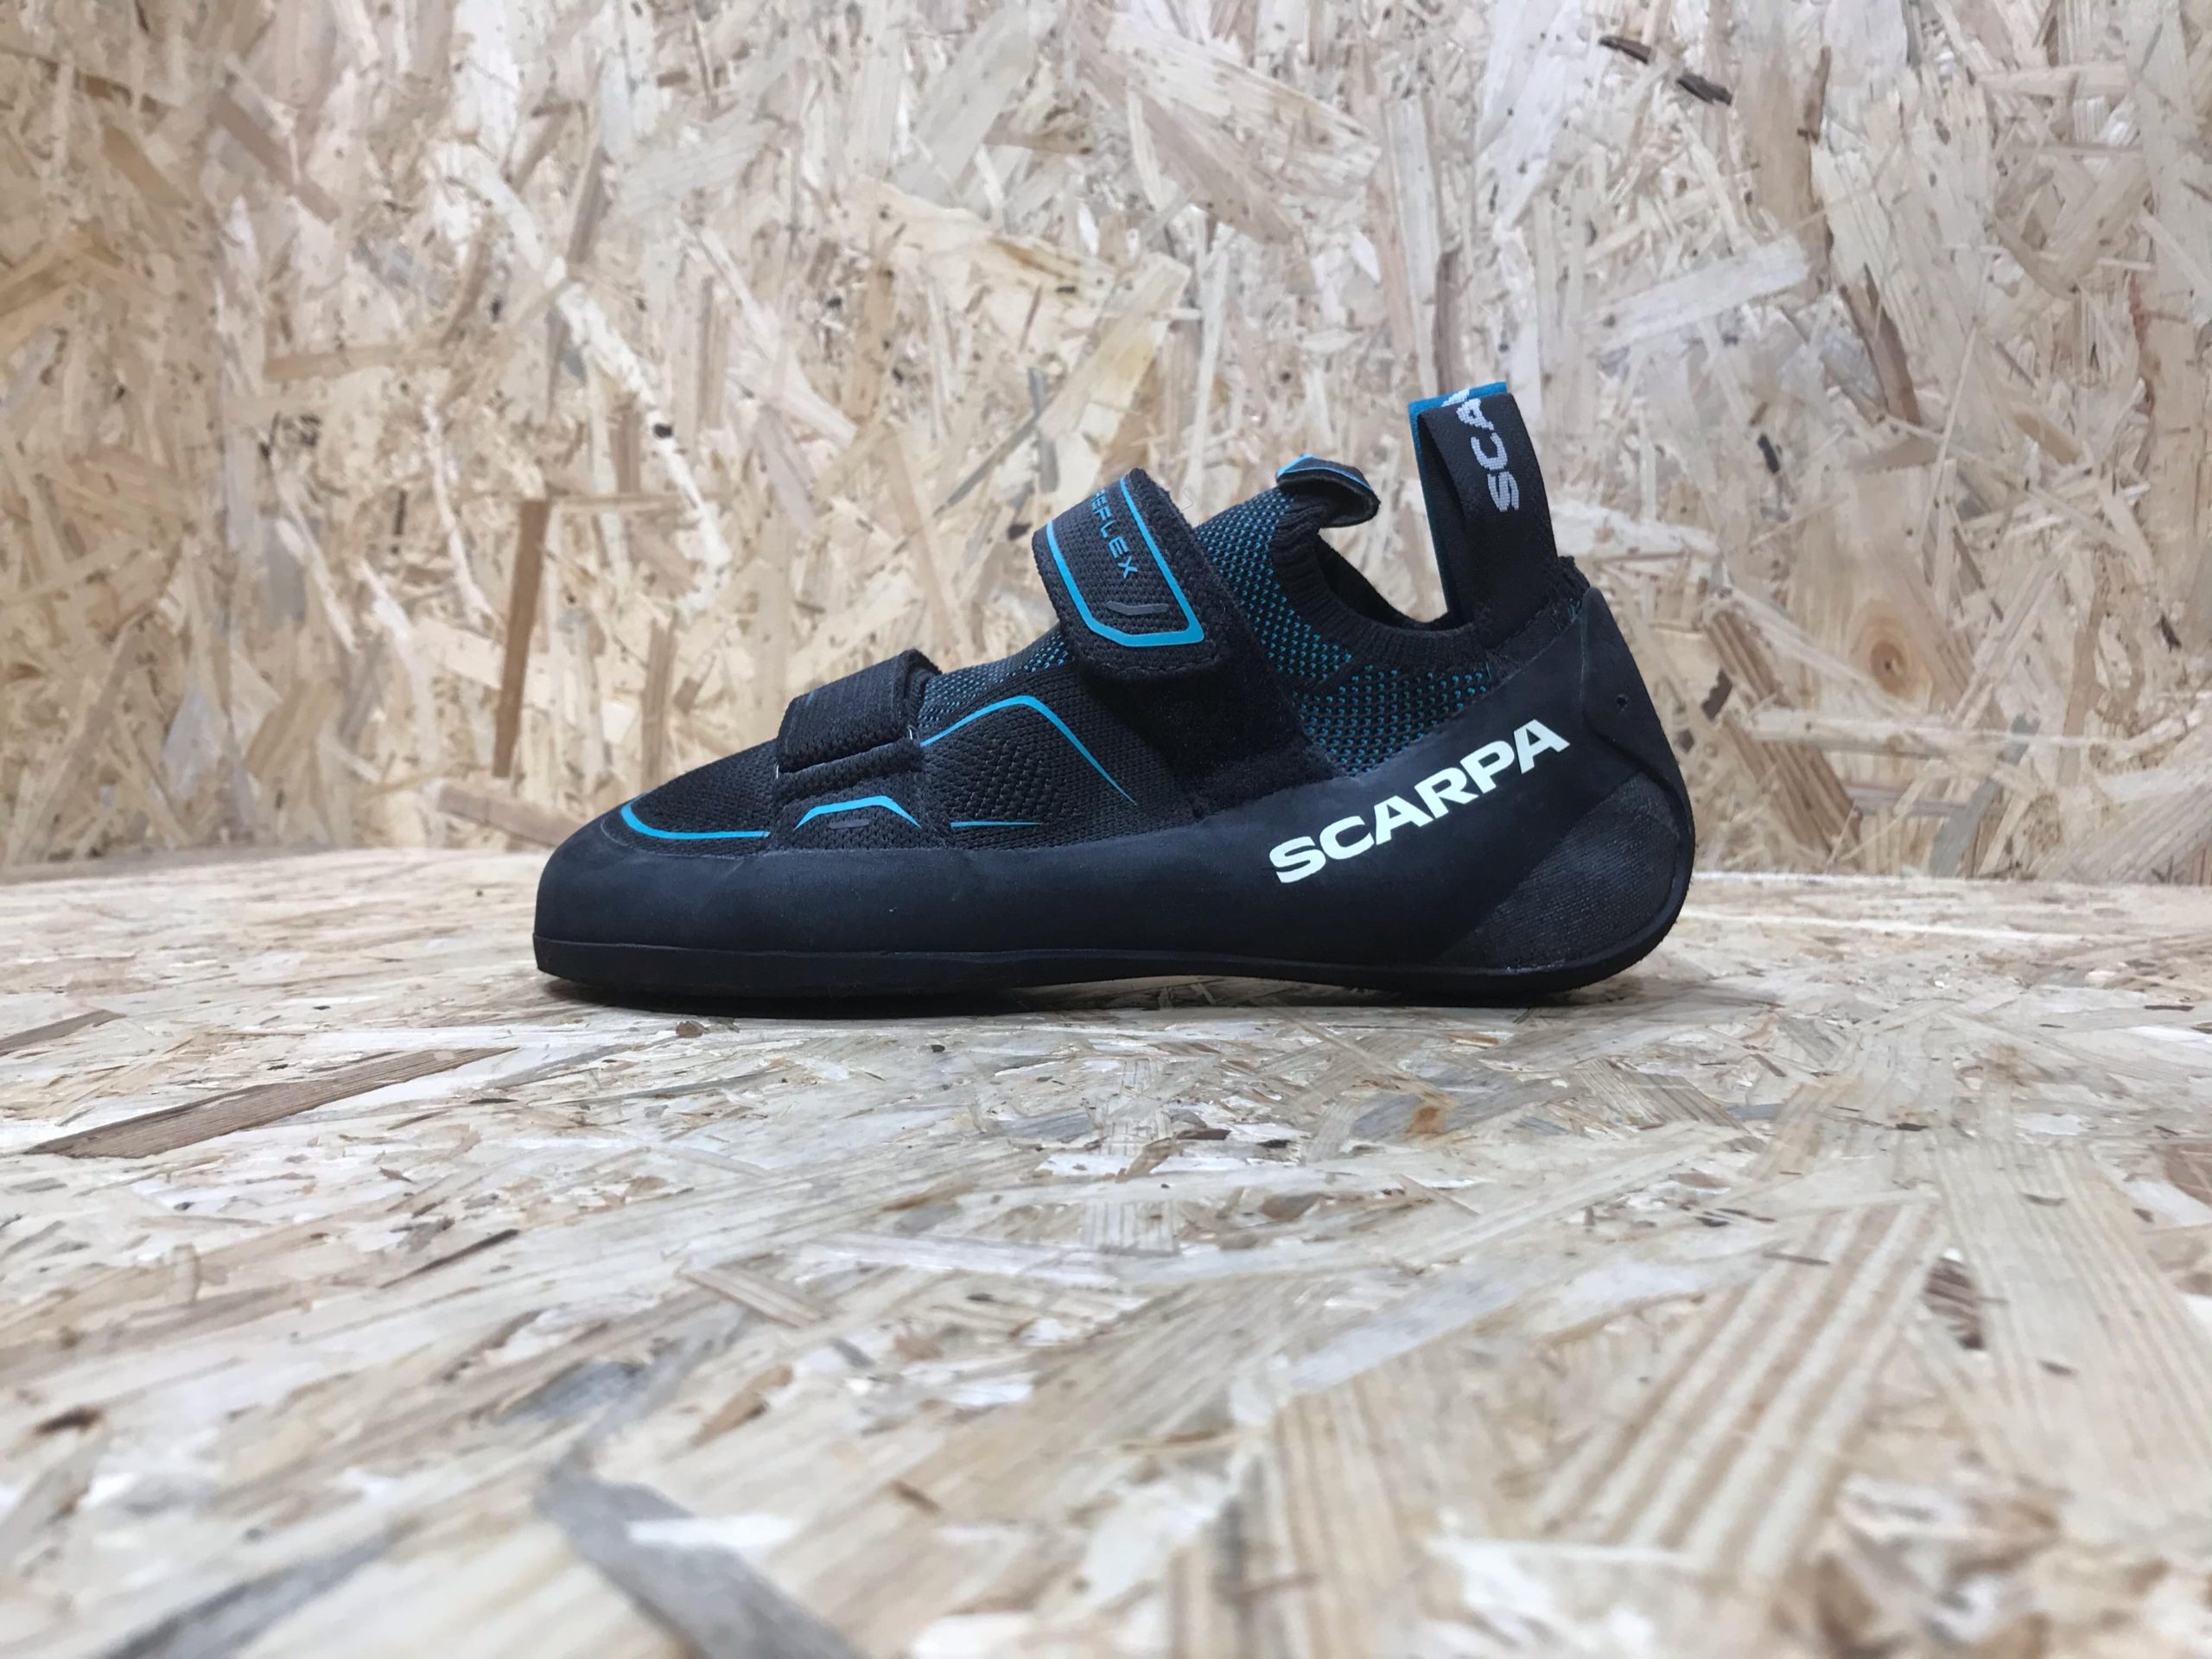 Scarpa Reflex V WMN Women's Climbing Shoes 